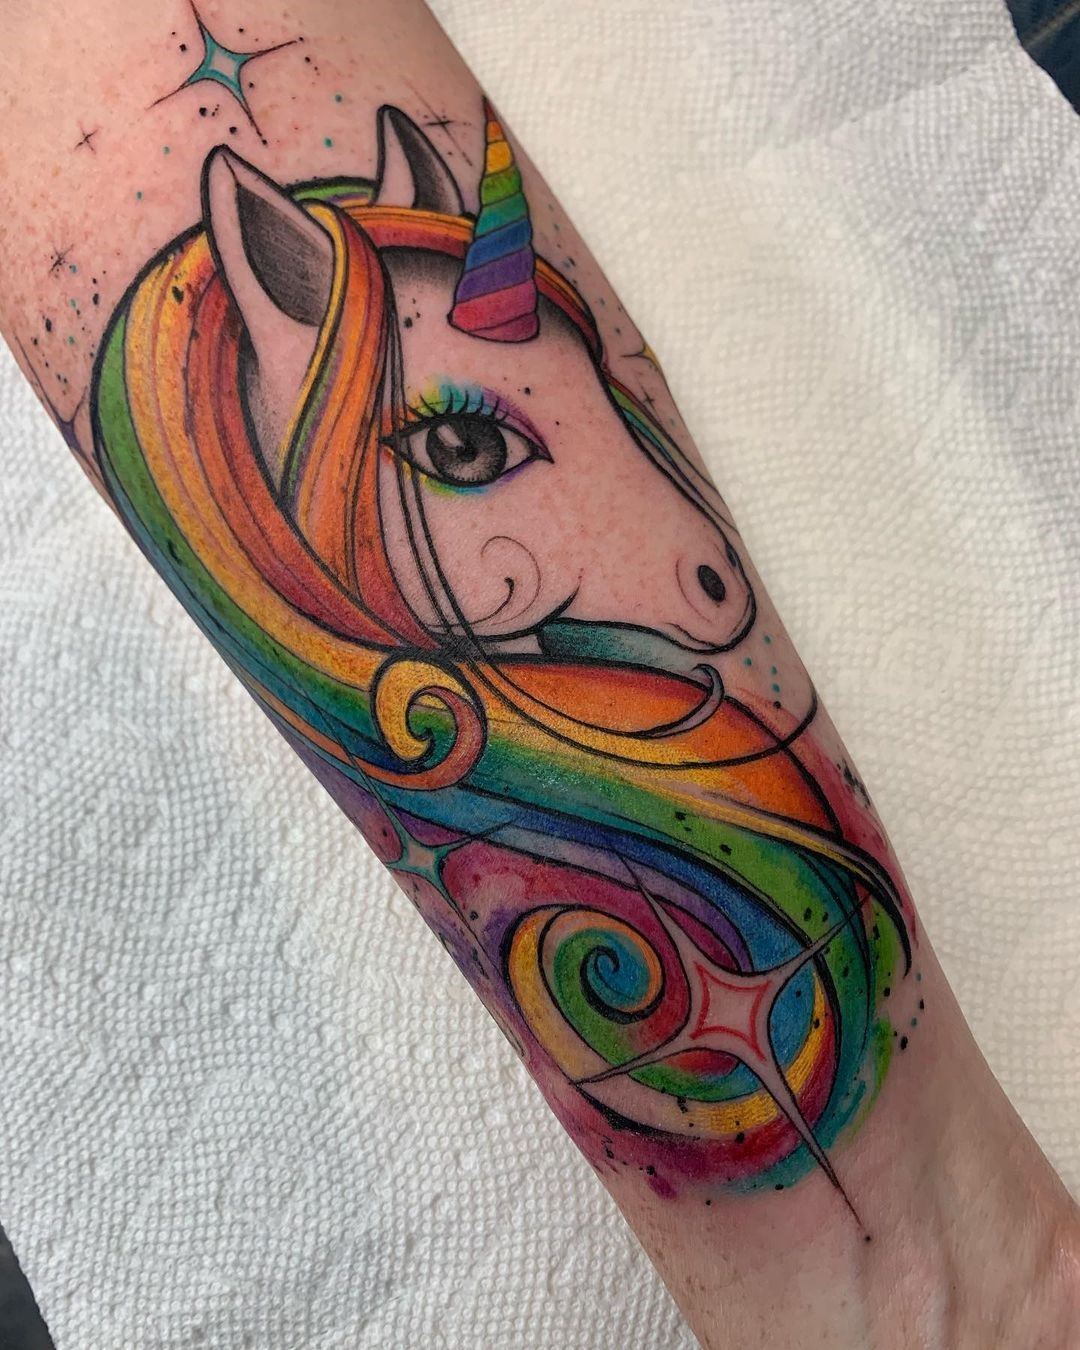 unicorn tattoo designs - Clip Art Library